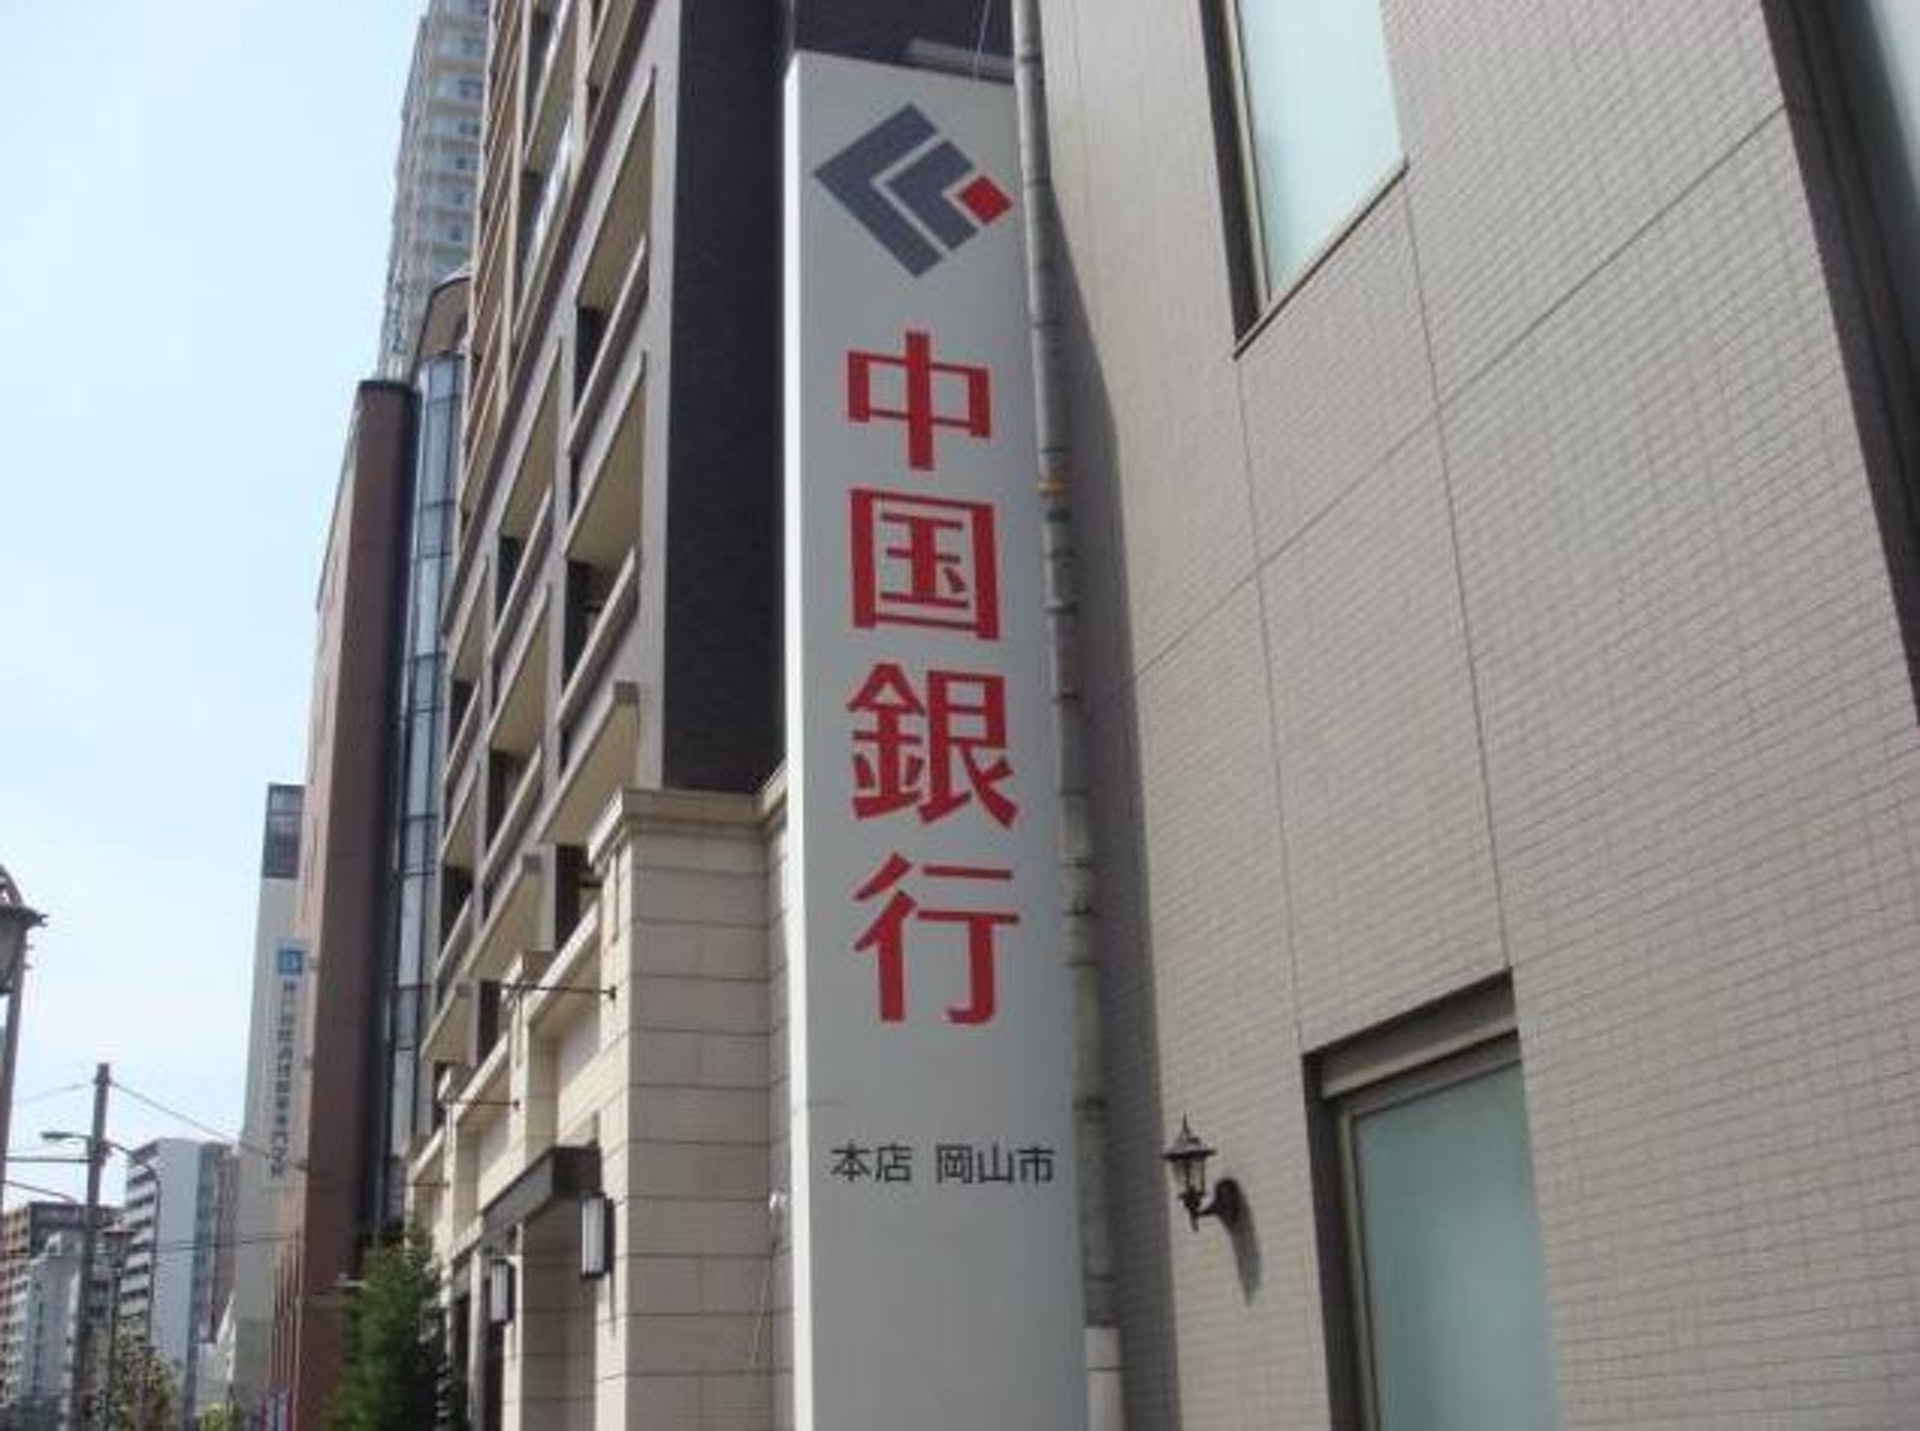 原创日本也有“中国银行”？简体字告示称与中国无关，网友：天大误会